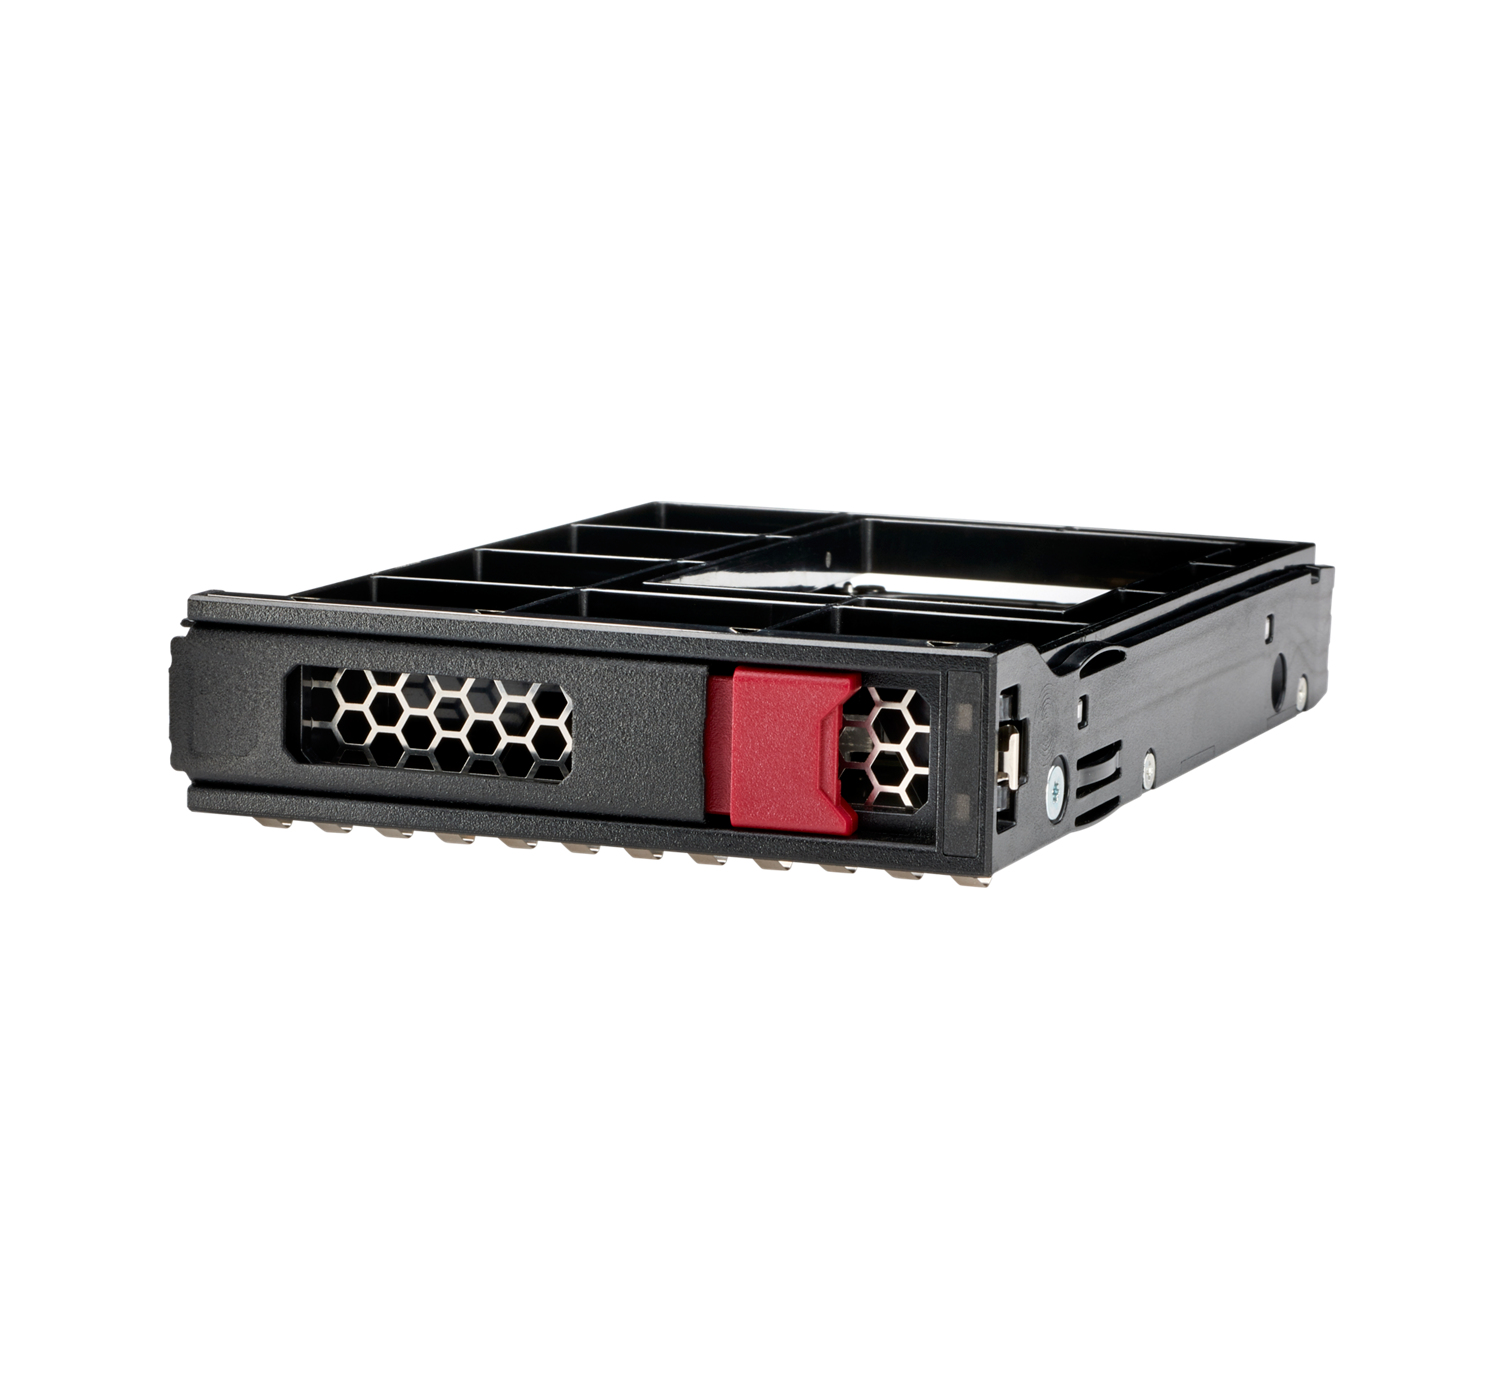 HPE SSD - Read Intensive - 960 GB - Hot-Swap - 3.5" LFF Low Profile (8.9 cm LFF Low Profile)